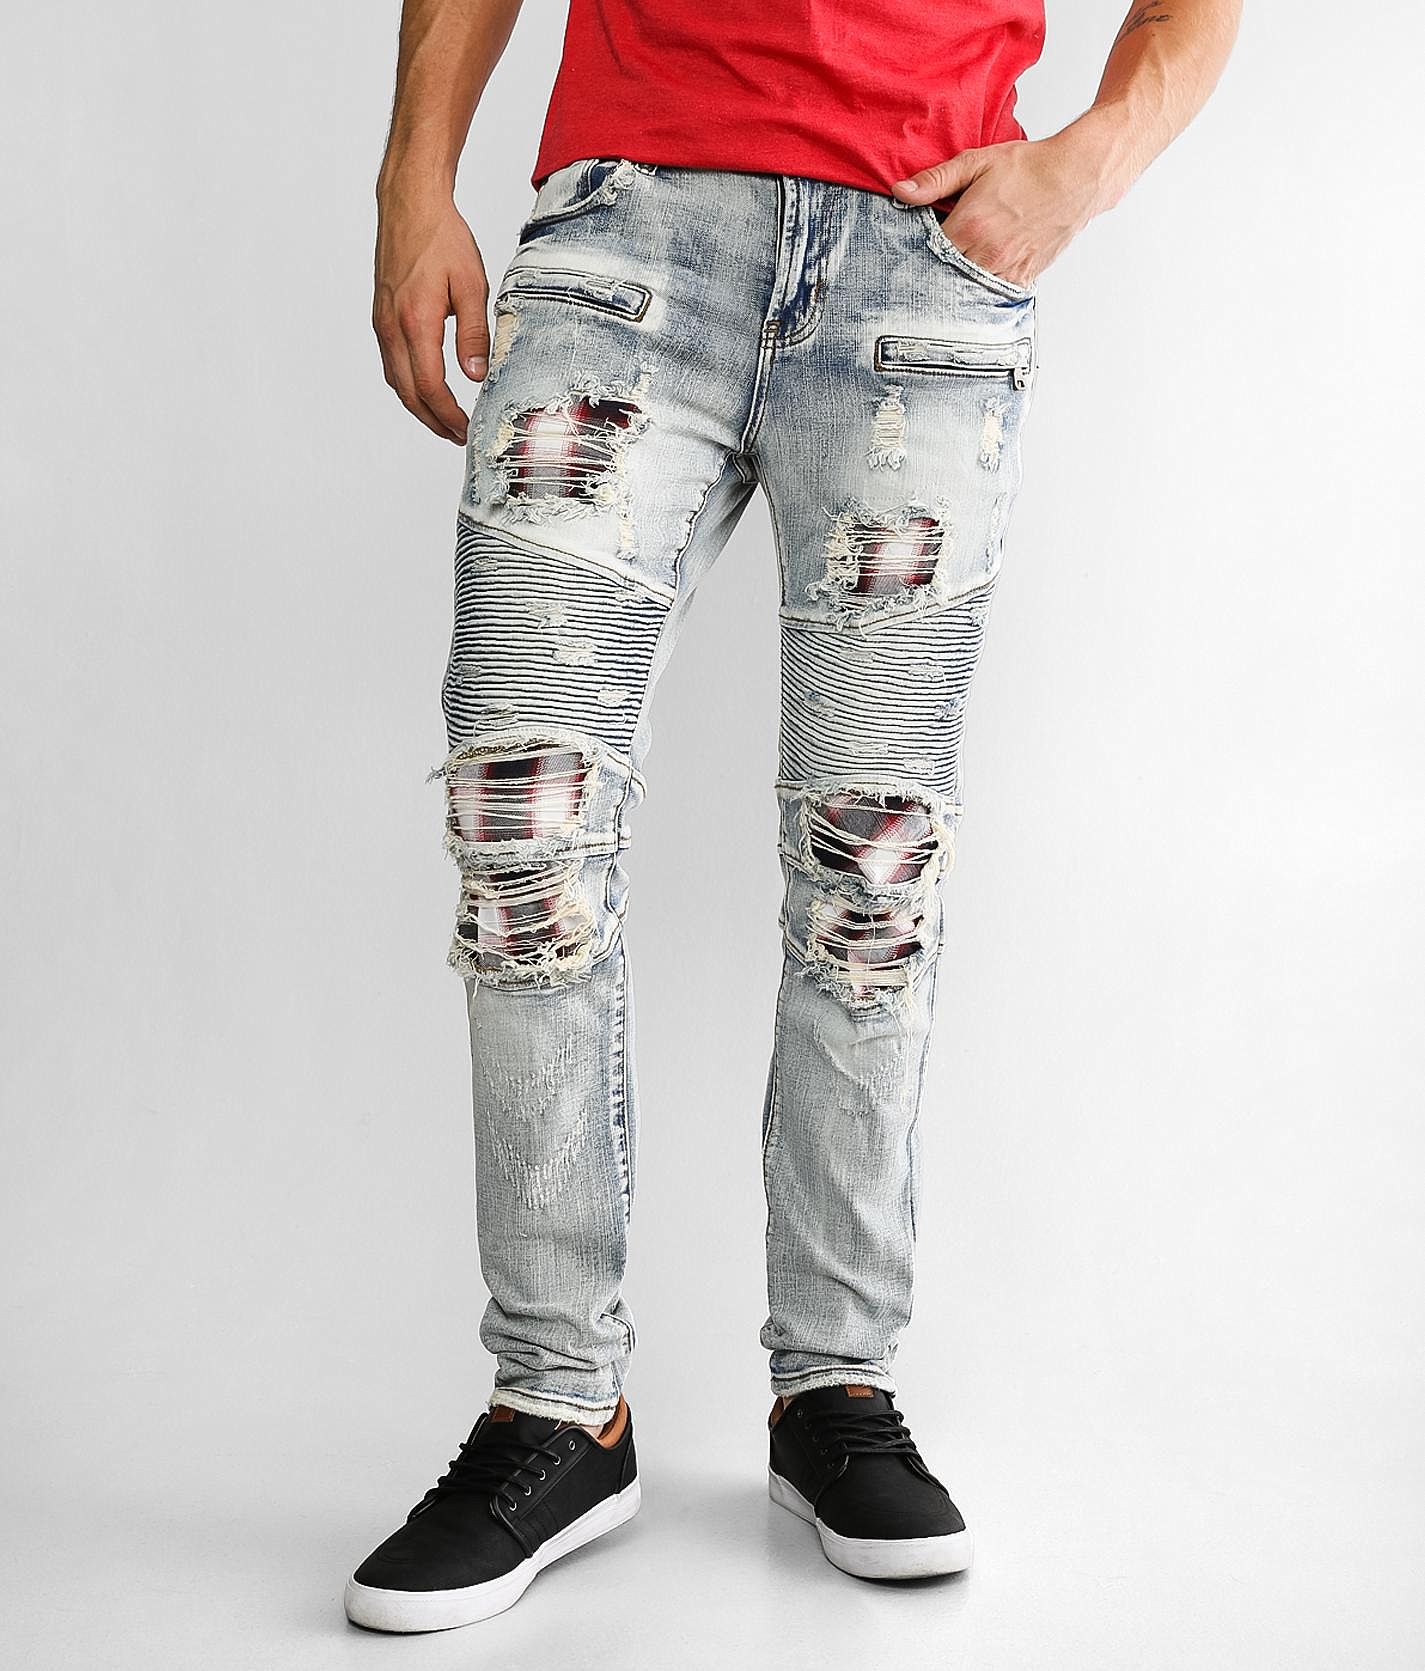 PREME Moto Skinny Stretch Jean - Men's Jeans in Indigo | Buckle